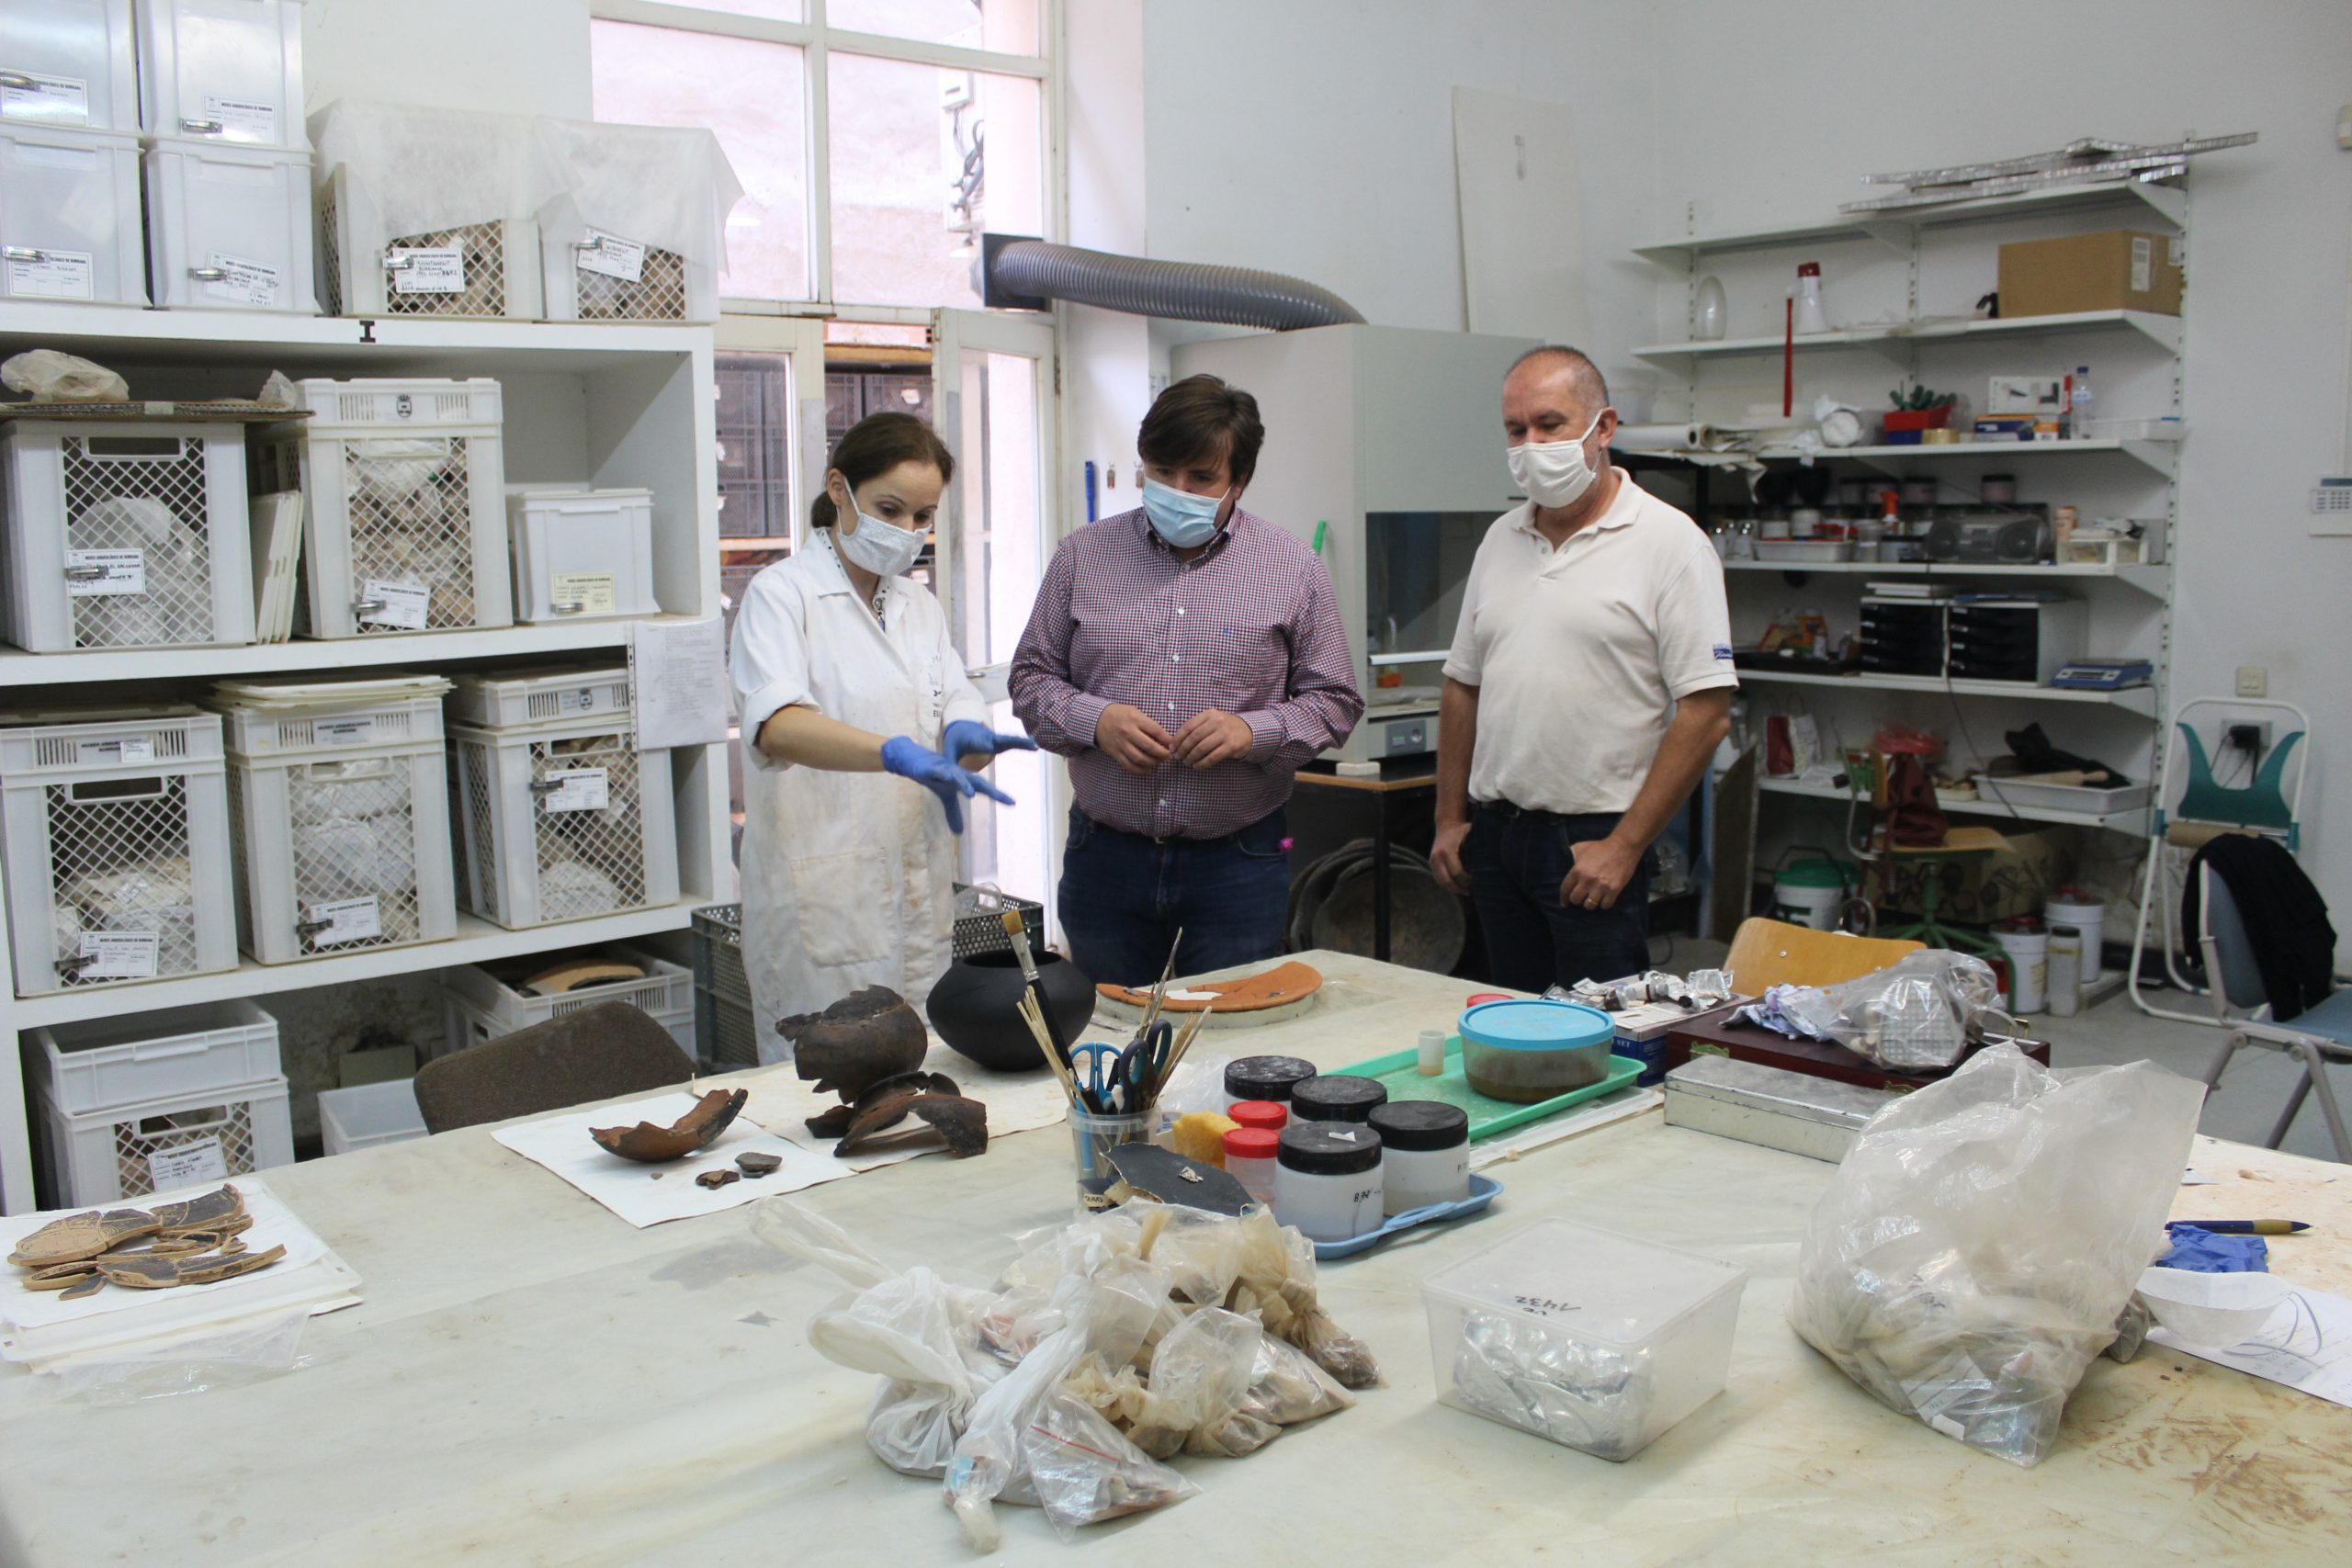 El Museo Arqueológico de Borriana restaura 12 nuevas piezas arqueológicas